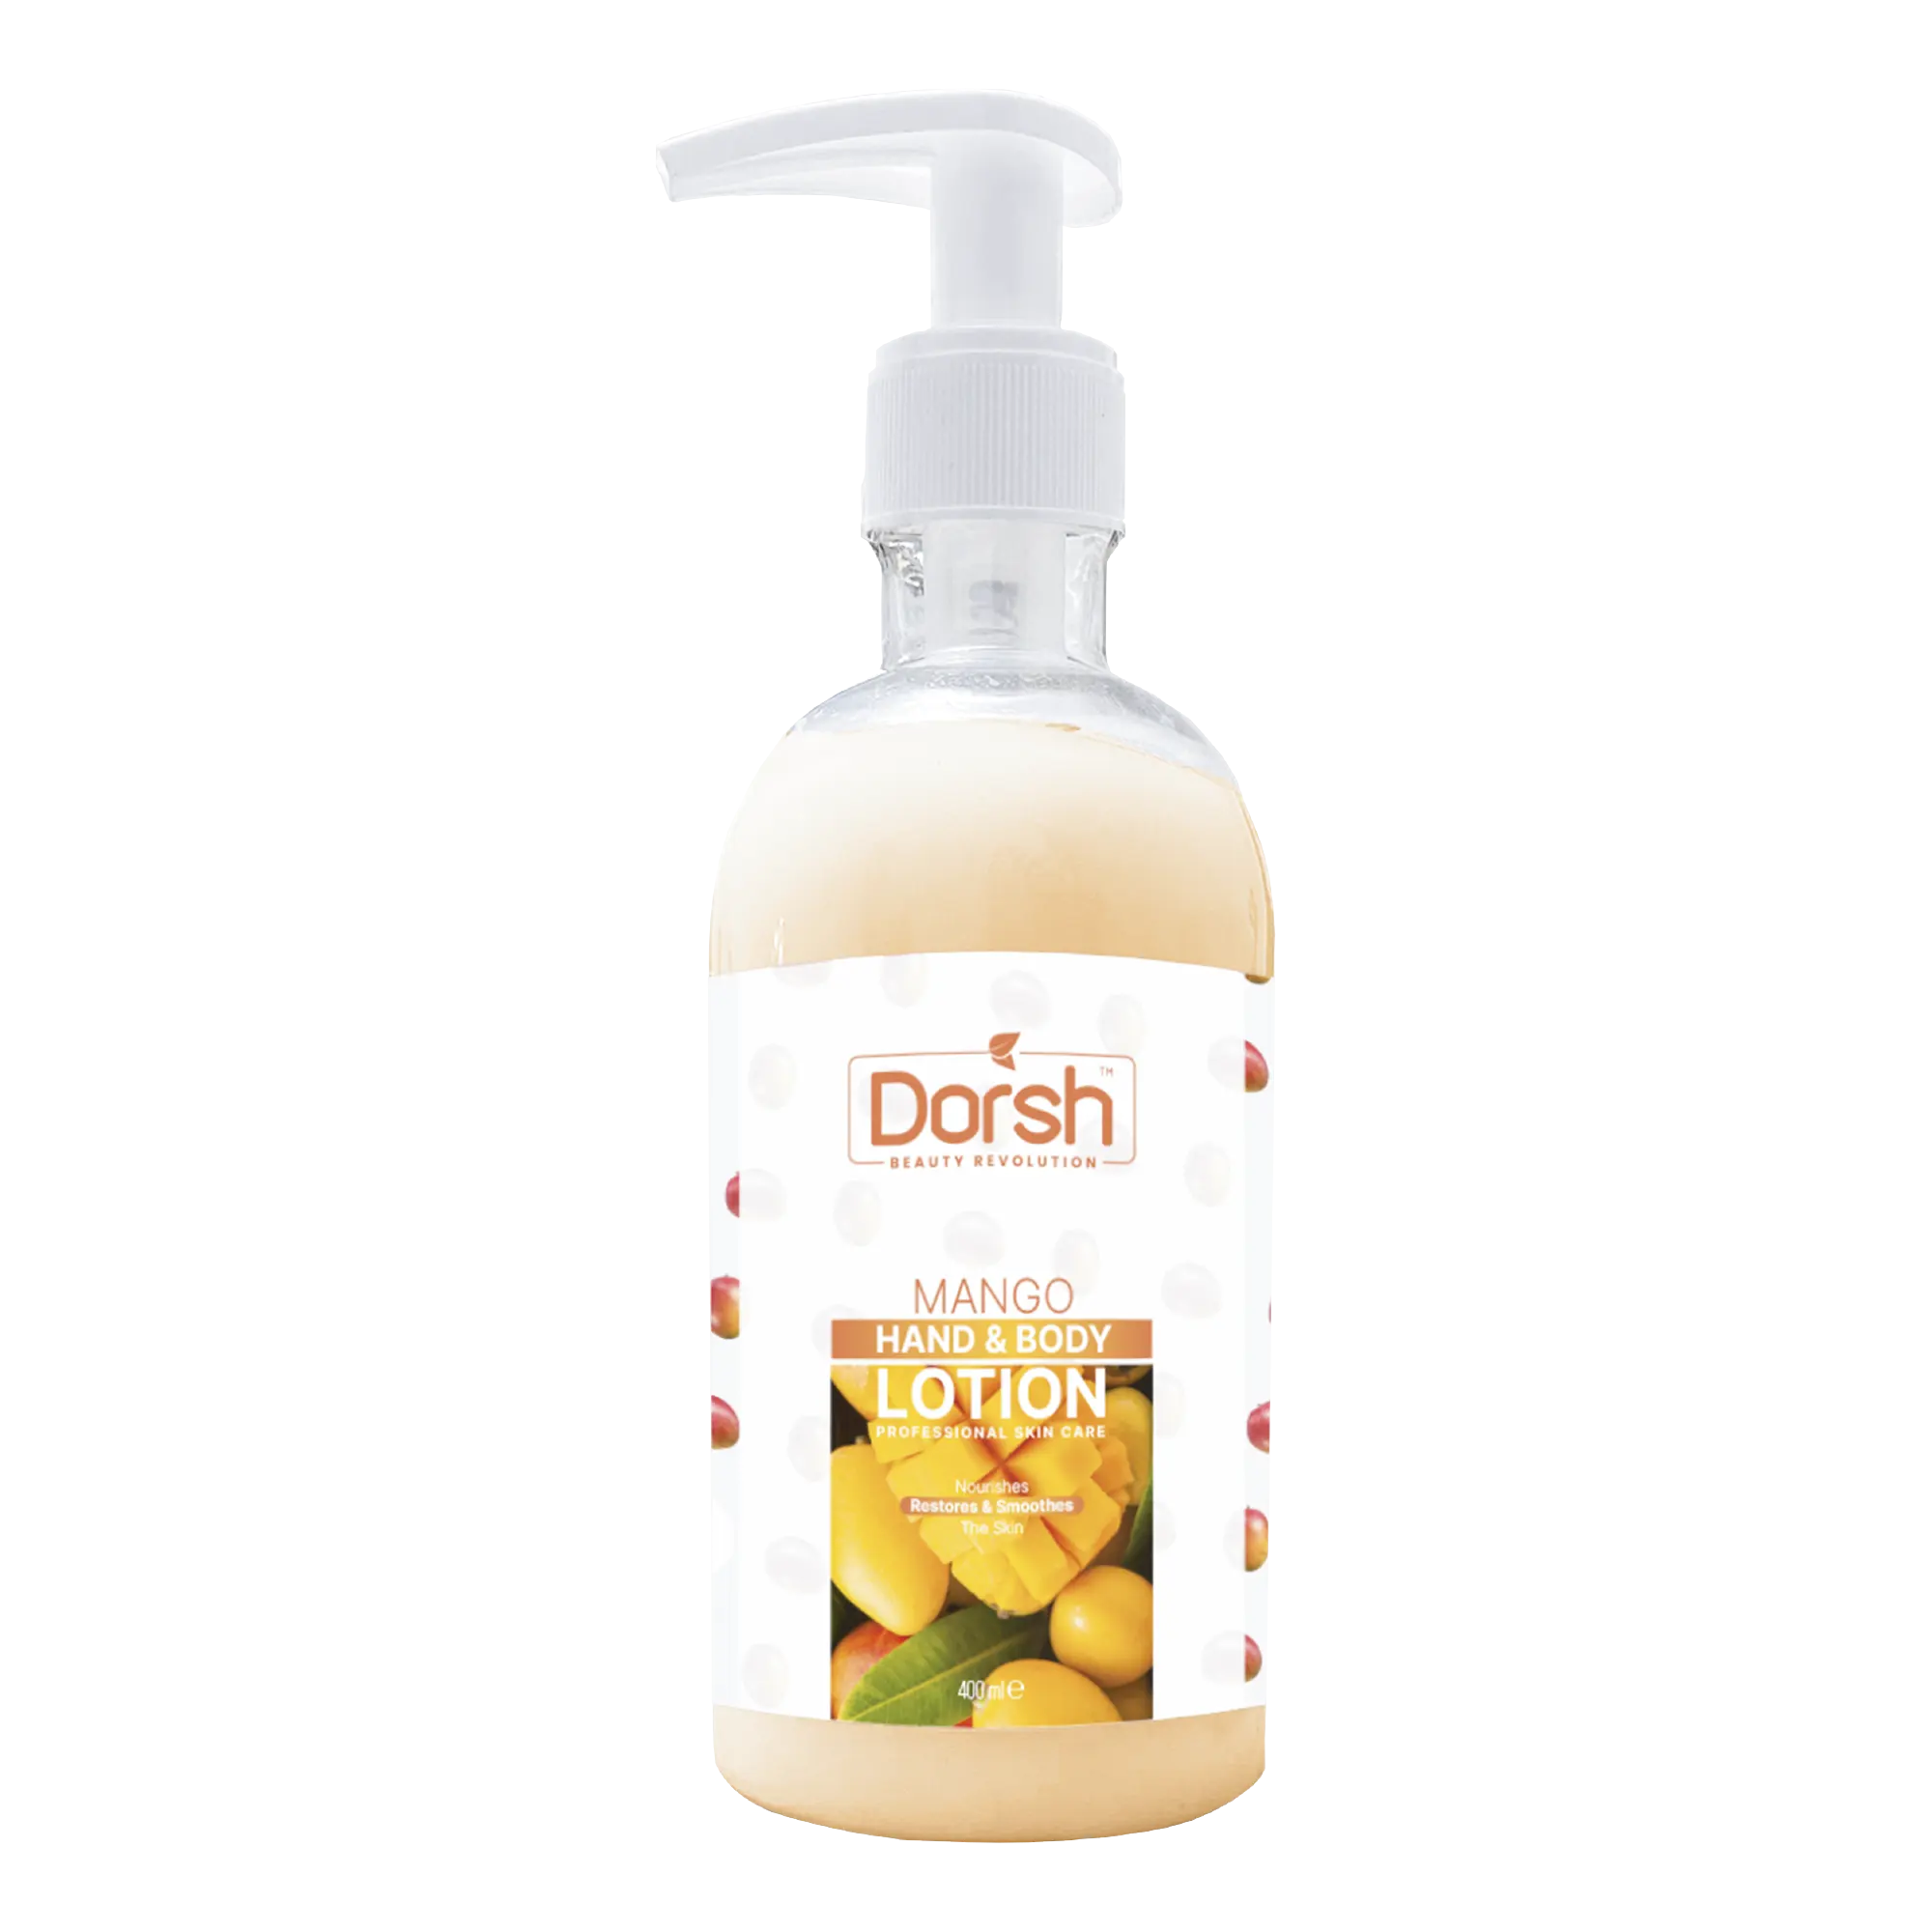 DORSH Beauty Revolution Mango Lotion pour les mains et le corps 400ml High Quality Premium - Made in Turkey